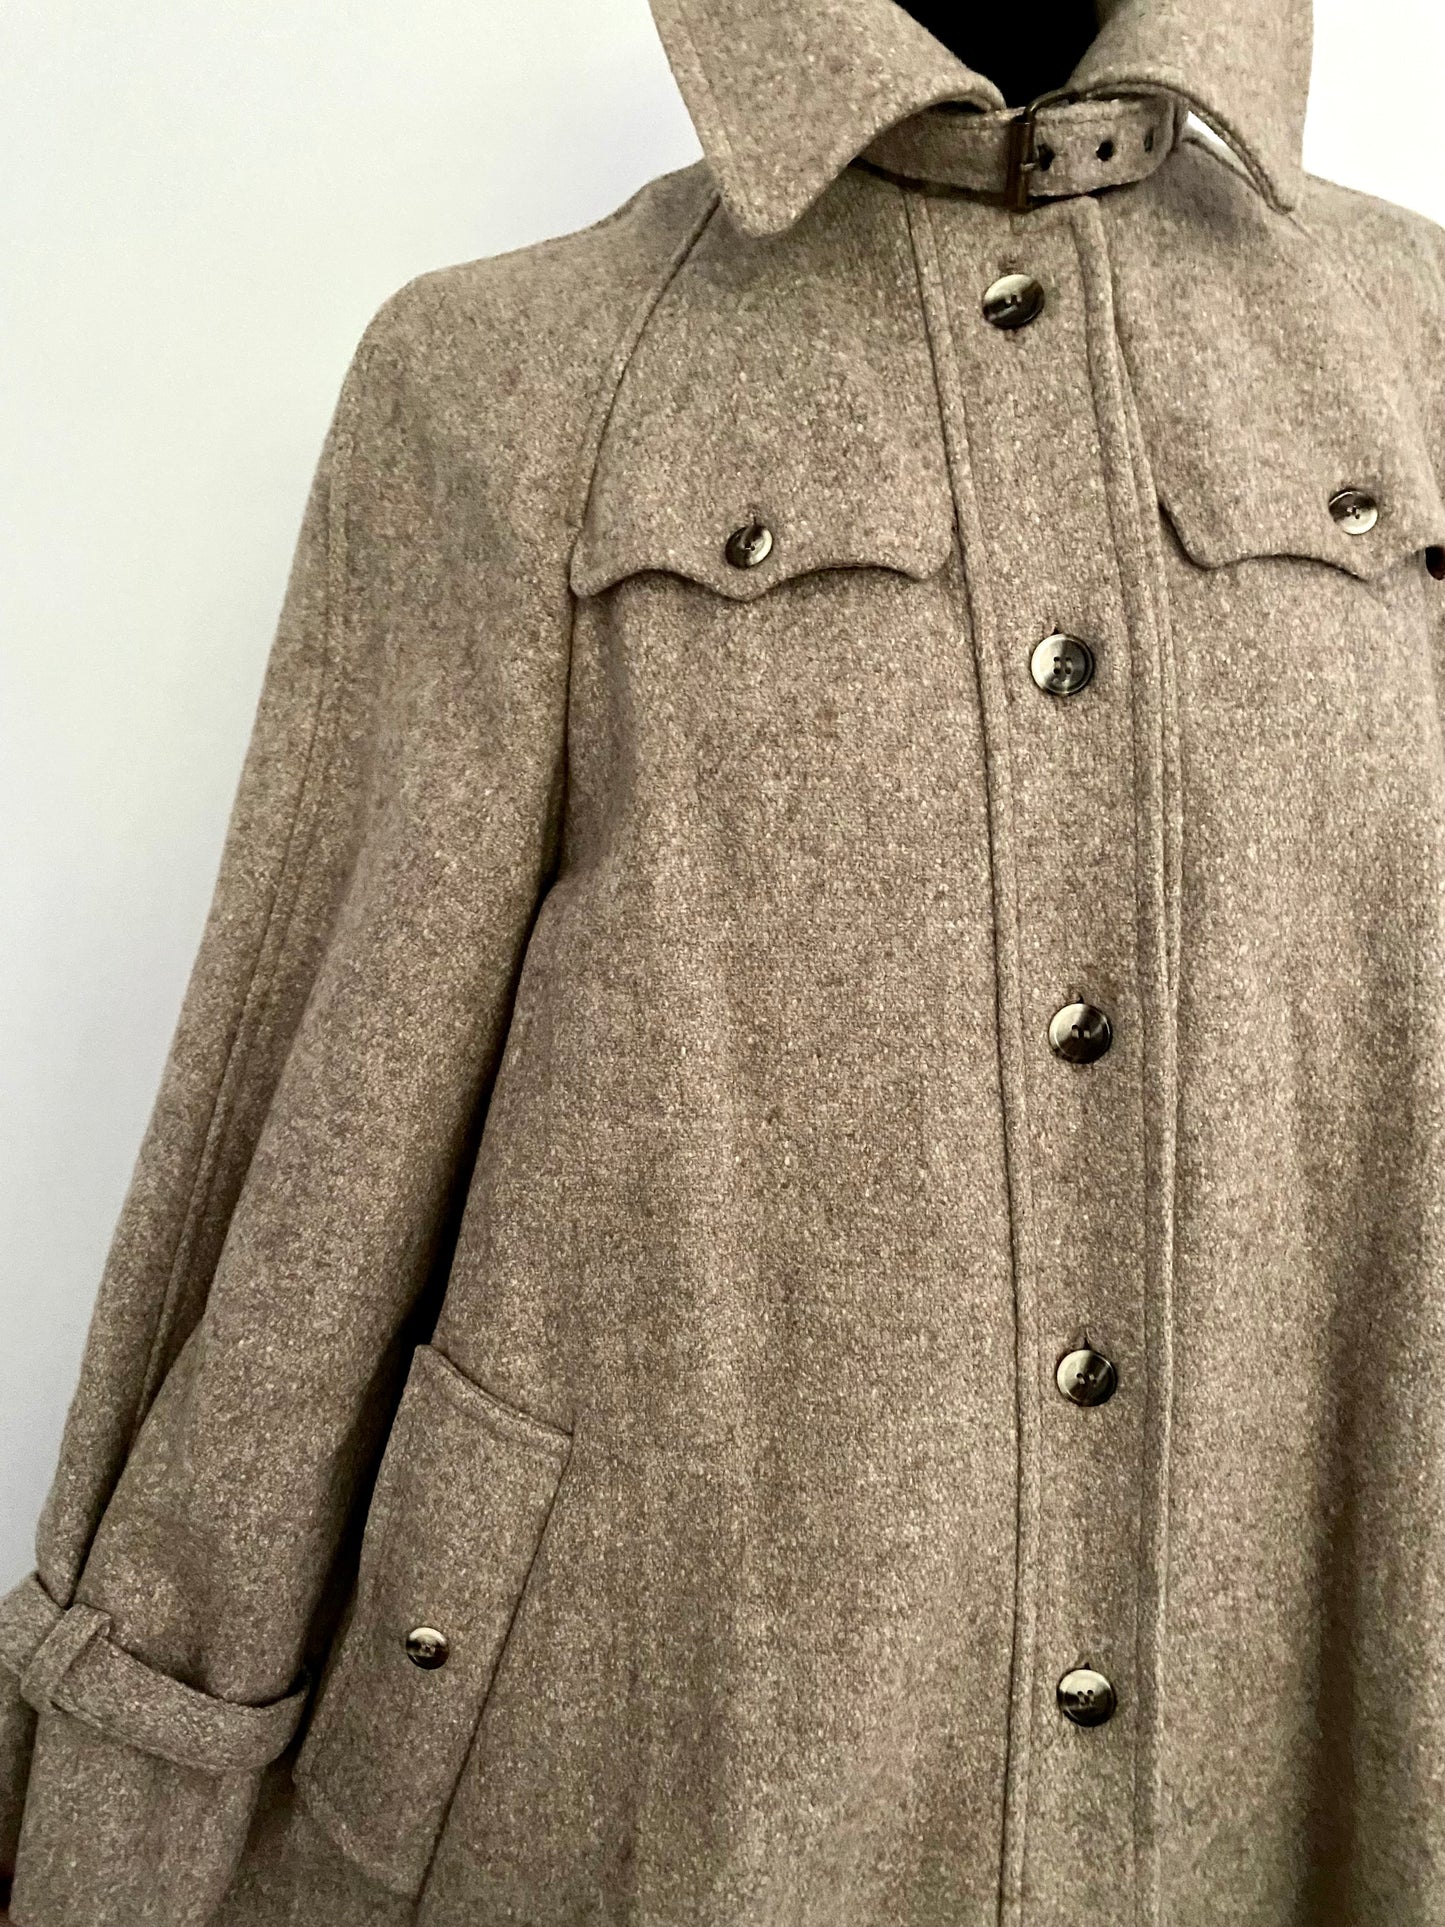 1970s Kline Landers Wool Coat